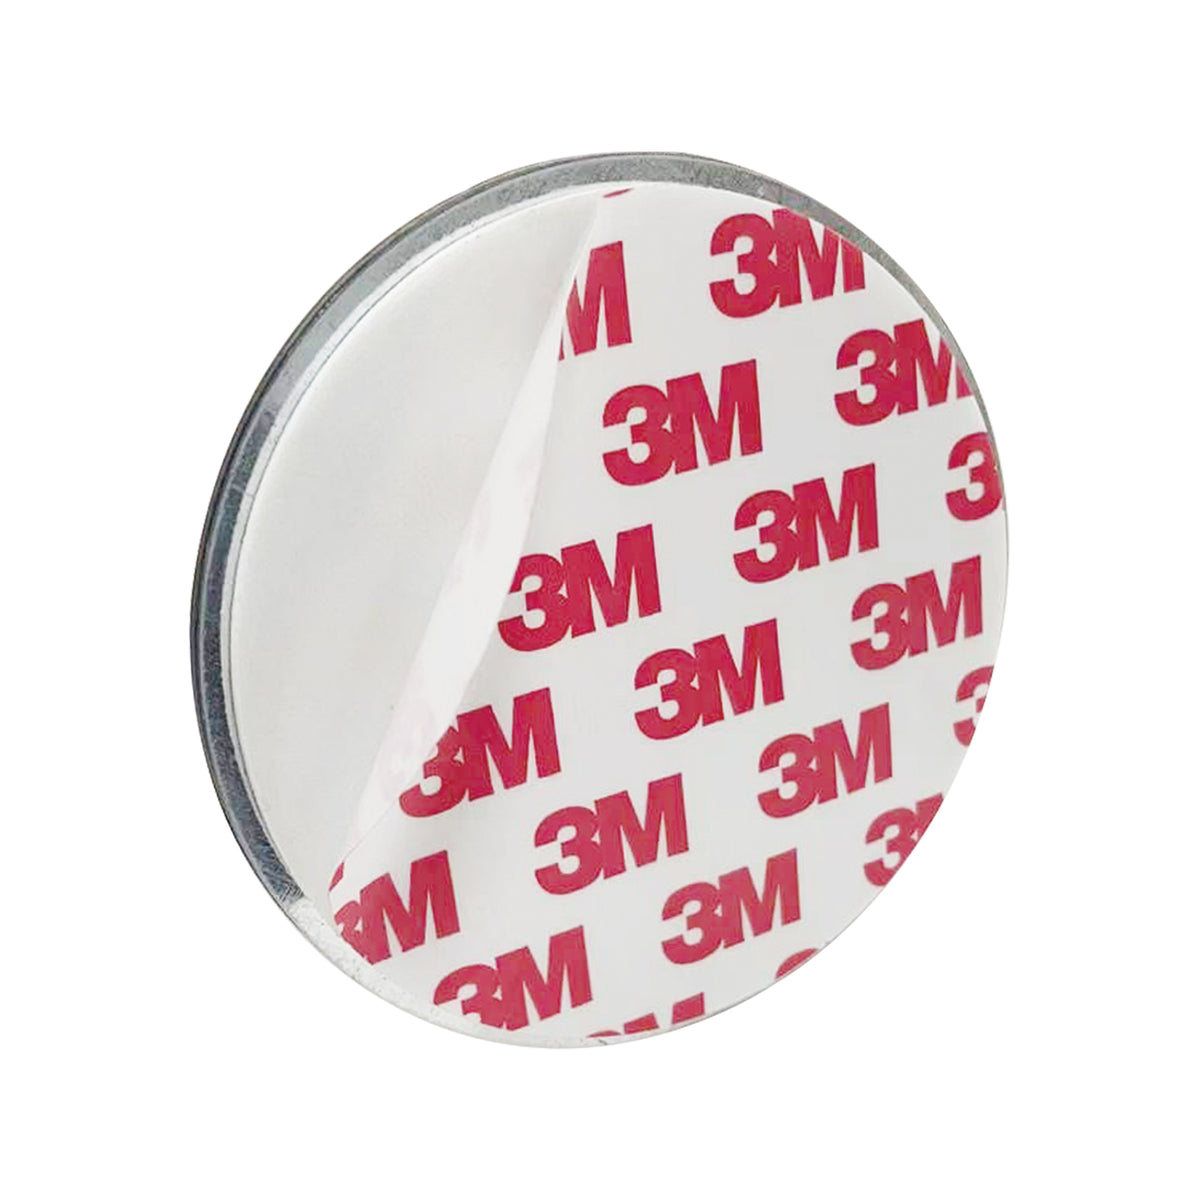 DVM-MMP: Magnetická montážní podložka pro detektory kouře a tepla.